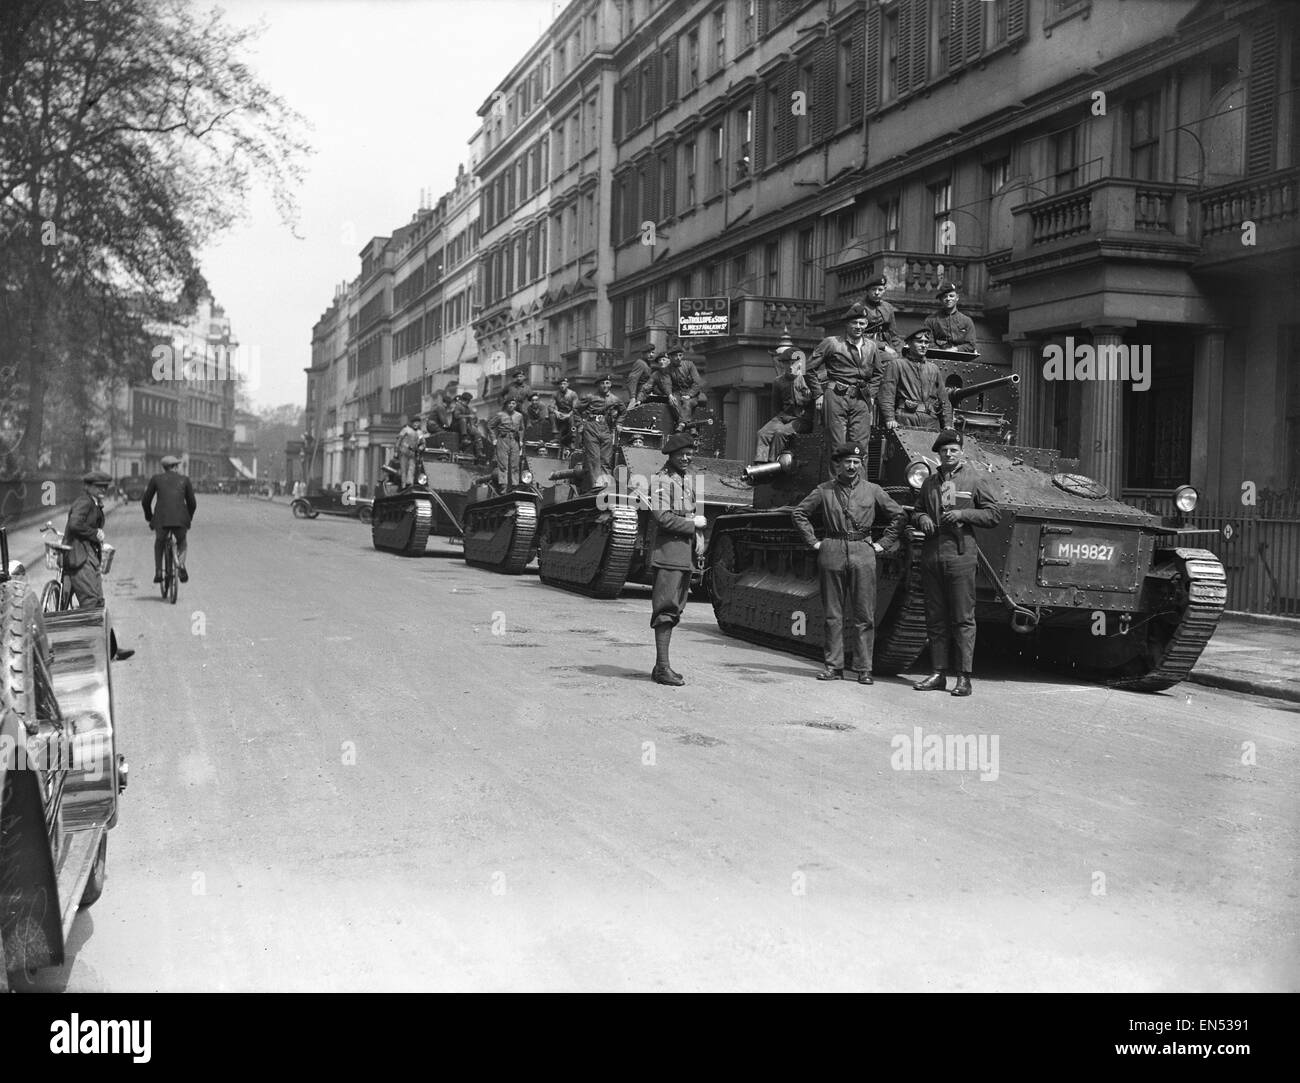 Soldaten warten durch ihre Vickers Medium Tanks am 10. Tag der Generalstreik in Pont Street London geparkt.  Der nationalen Streit entstand, nachdem Verhandlungen zwischen den Bergleuten und meine Besitzer nicht über Löhne und der Streik am 3. Mai 1926 begann. Stockfoto